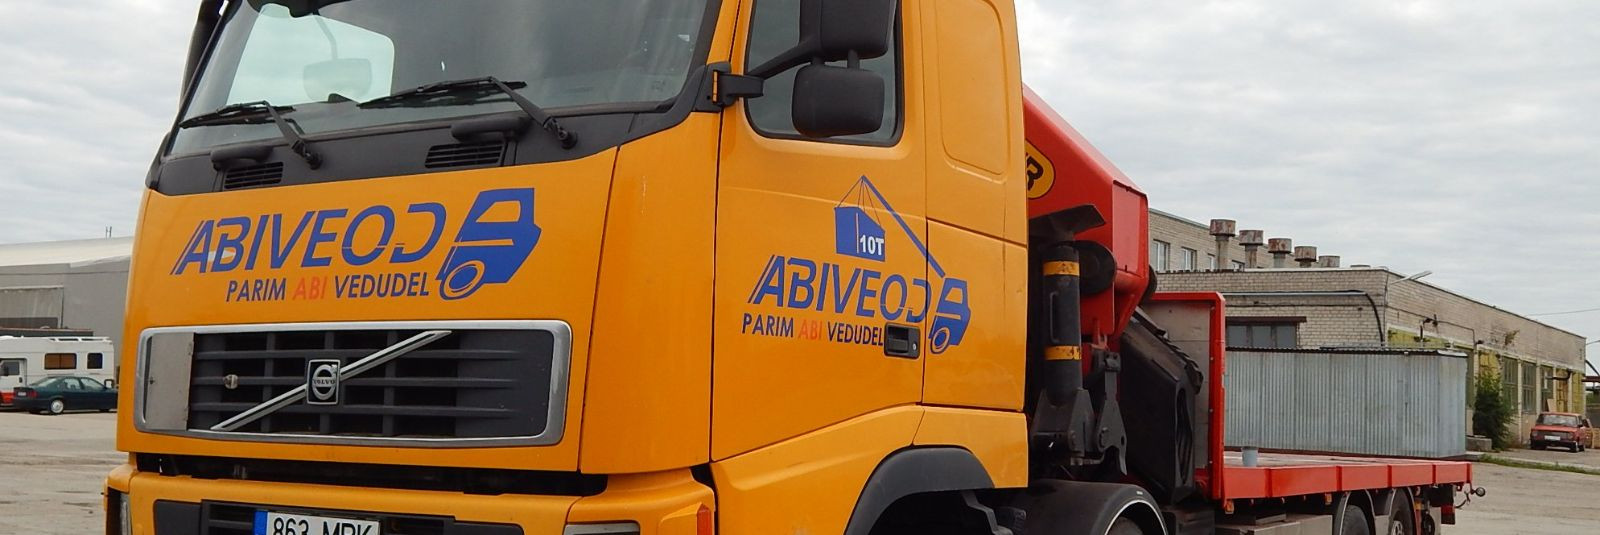 ABIVEOD OÜ on logistikavaldkonnas juhtiv ettevõte, kes pakub ...